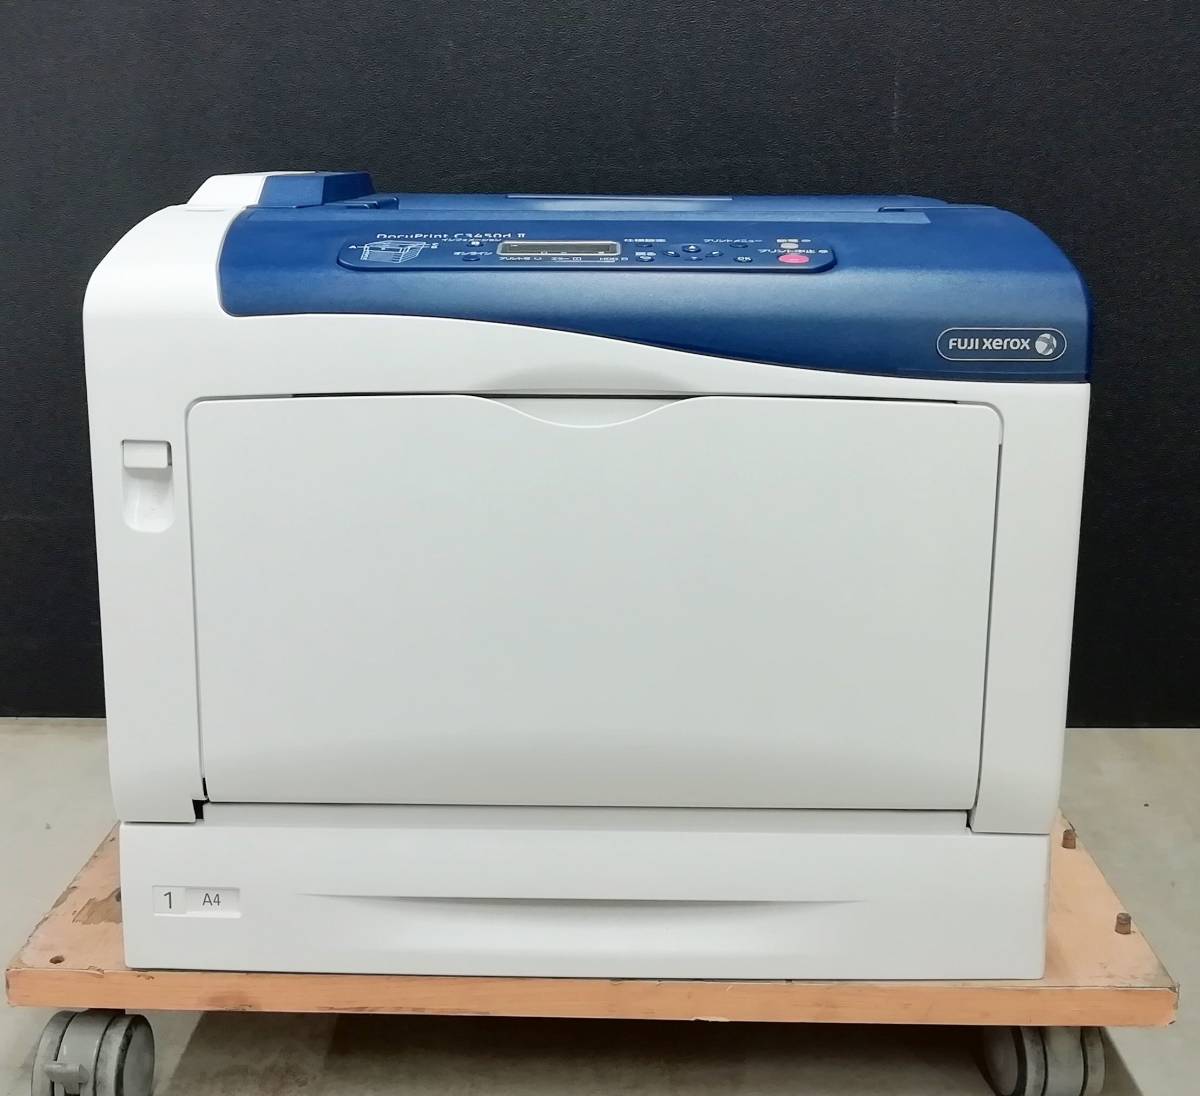 【印刷枚数少】FUJI XEROX A3 カラー レーザープリンター DocuPrint C3450d Ⅱ 印刷枚数4032枚 Windows11対応【H23122520】_画像2